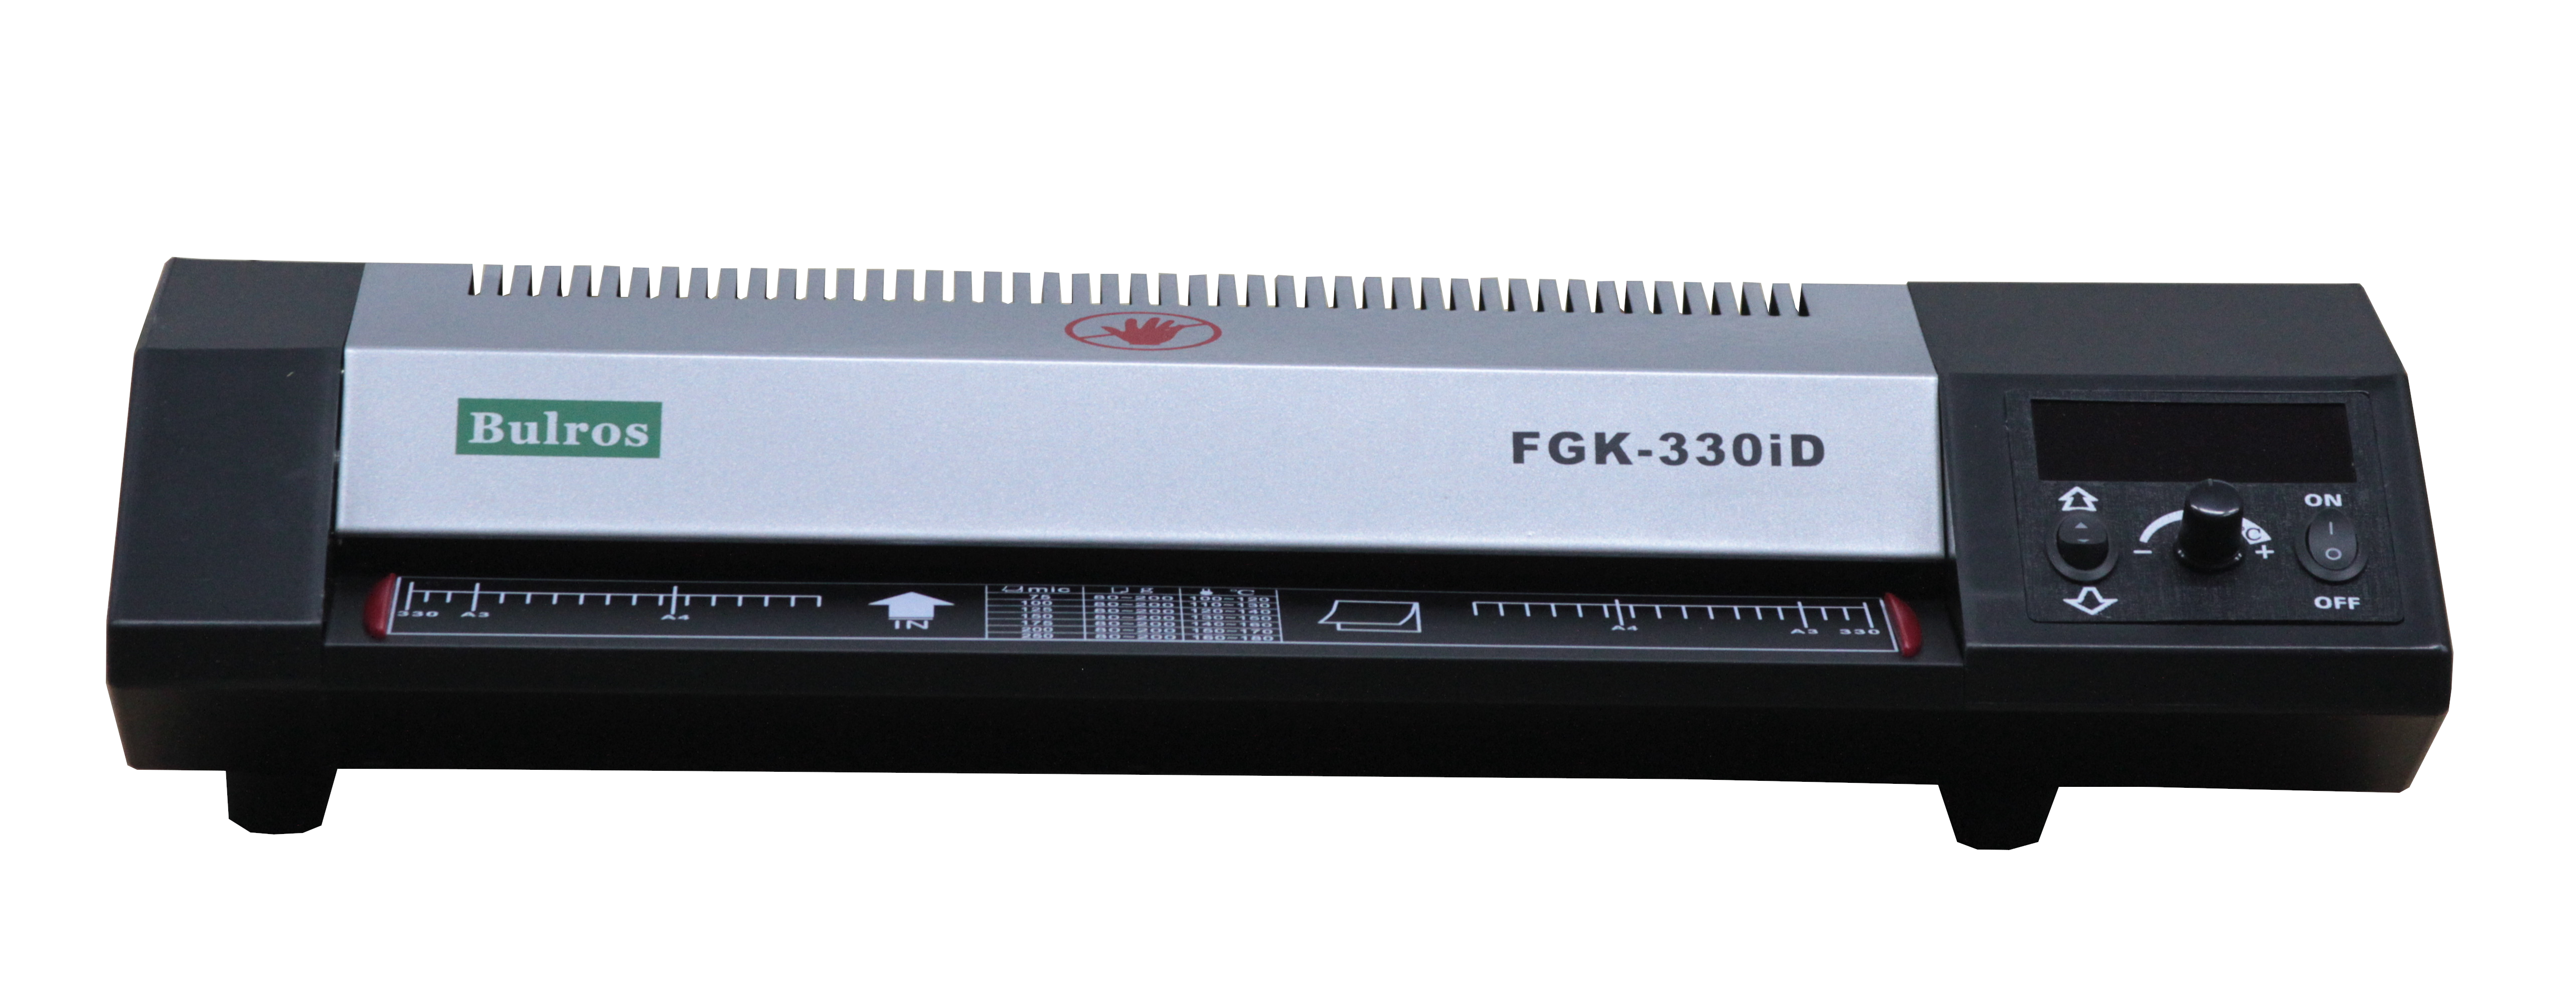 Ламинатор Bulros FGK330iD, A3, 250 мкм, валов:4, горячее + холодное ламинирование, 56 см/мин., фото, реверс, черный (FGK330iD)